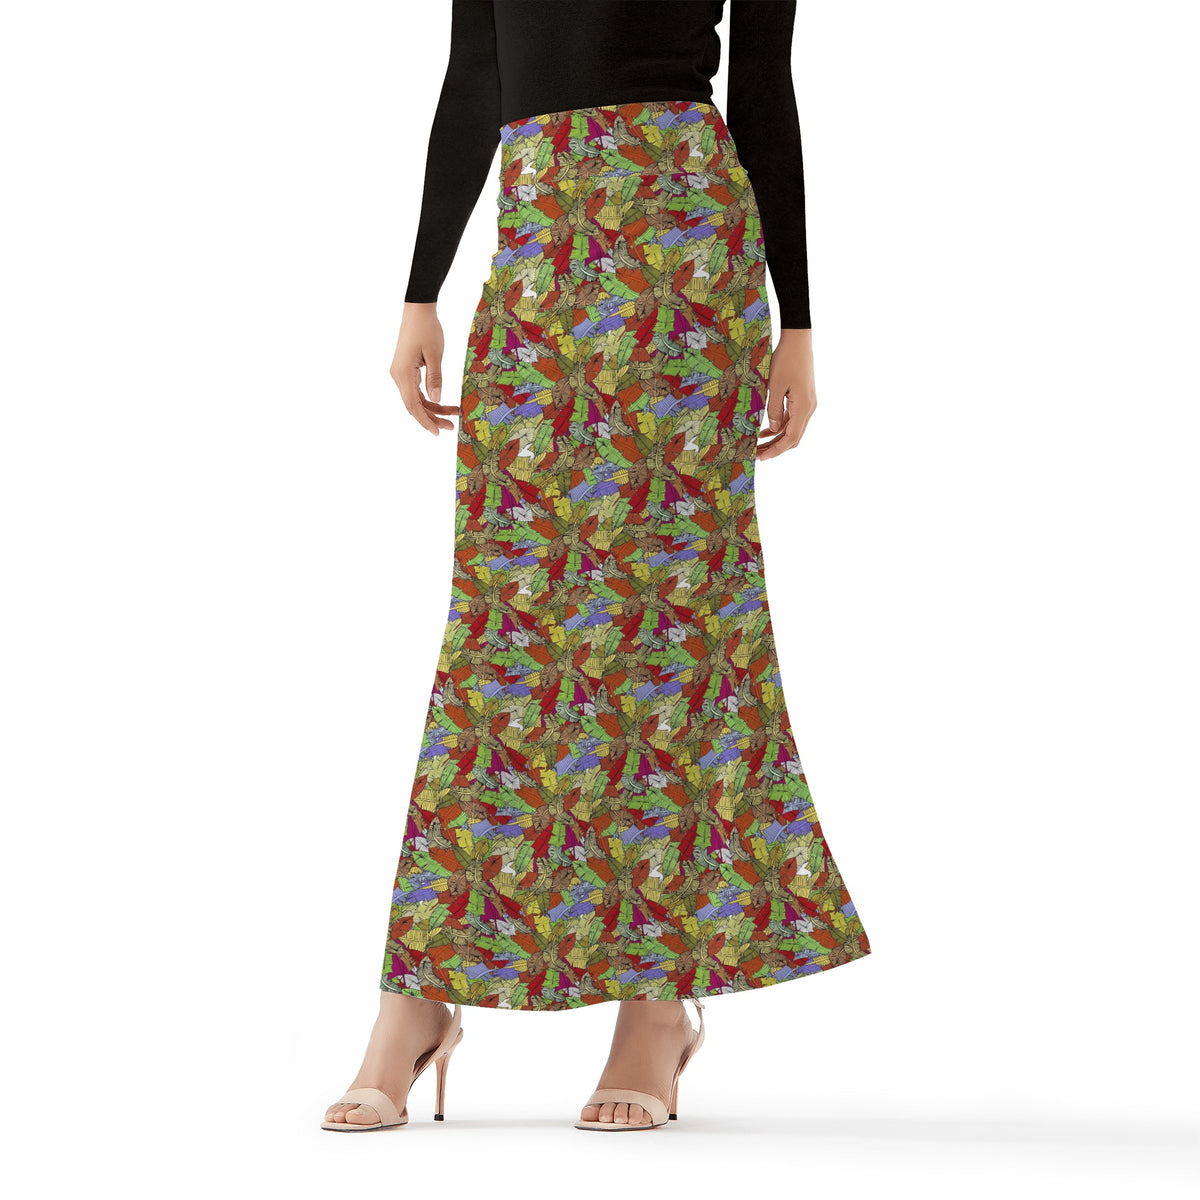 Women's Full Length Skirt in Ankara Prints Popcustoms